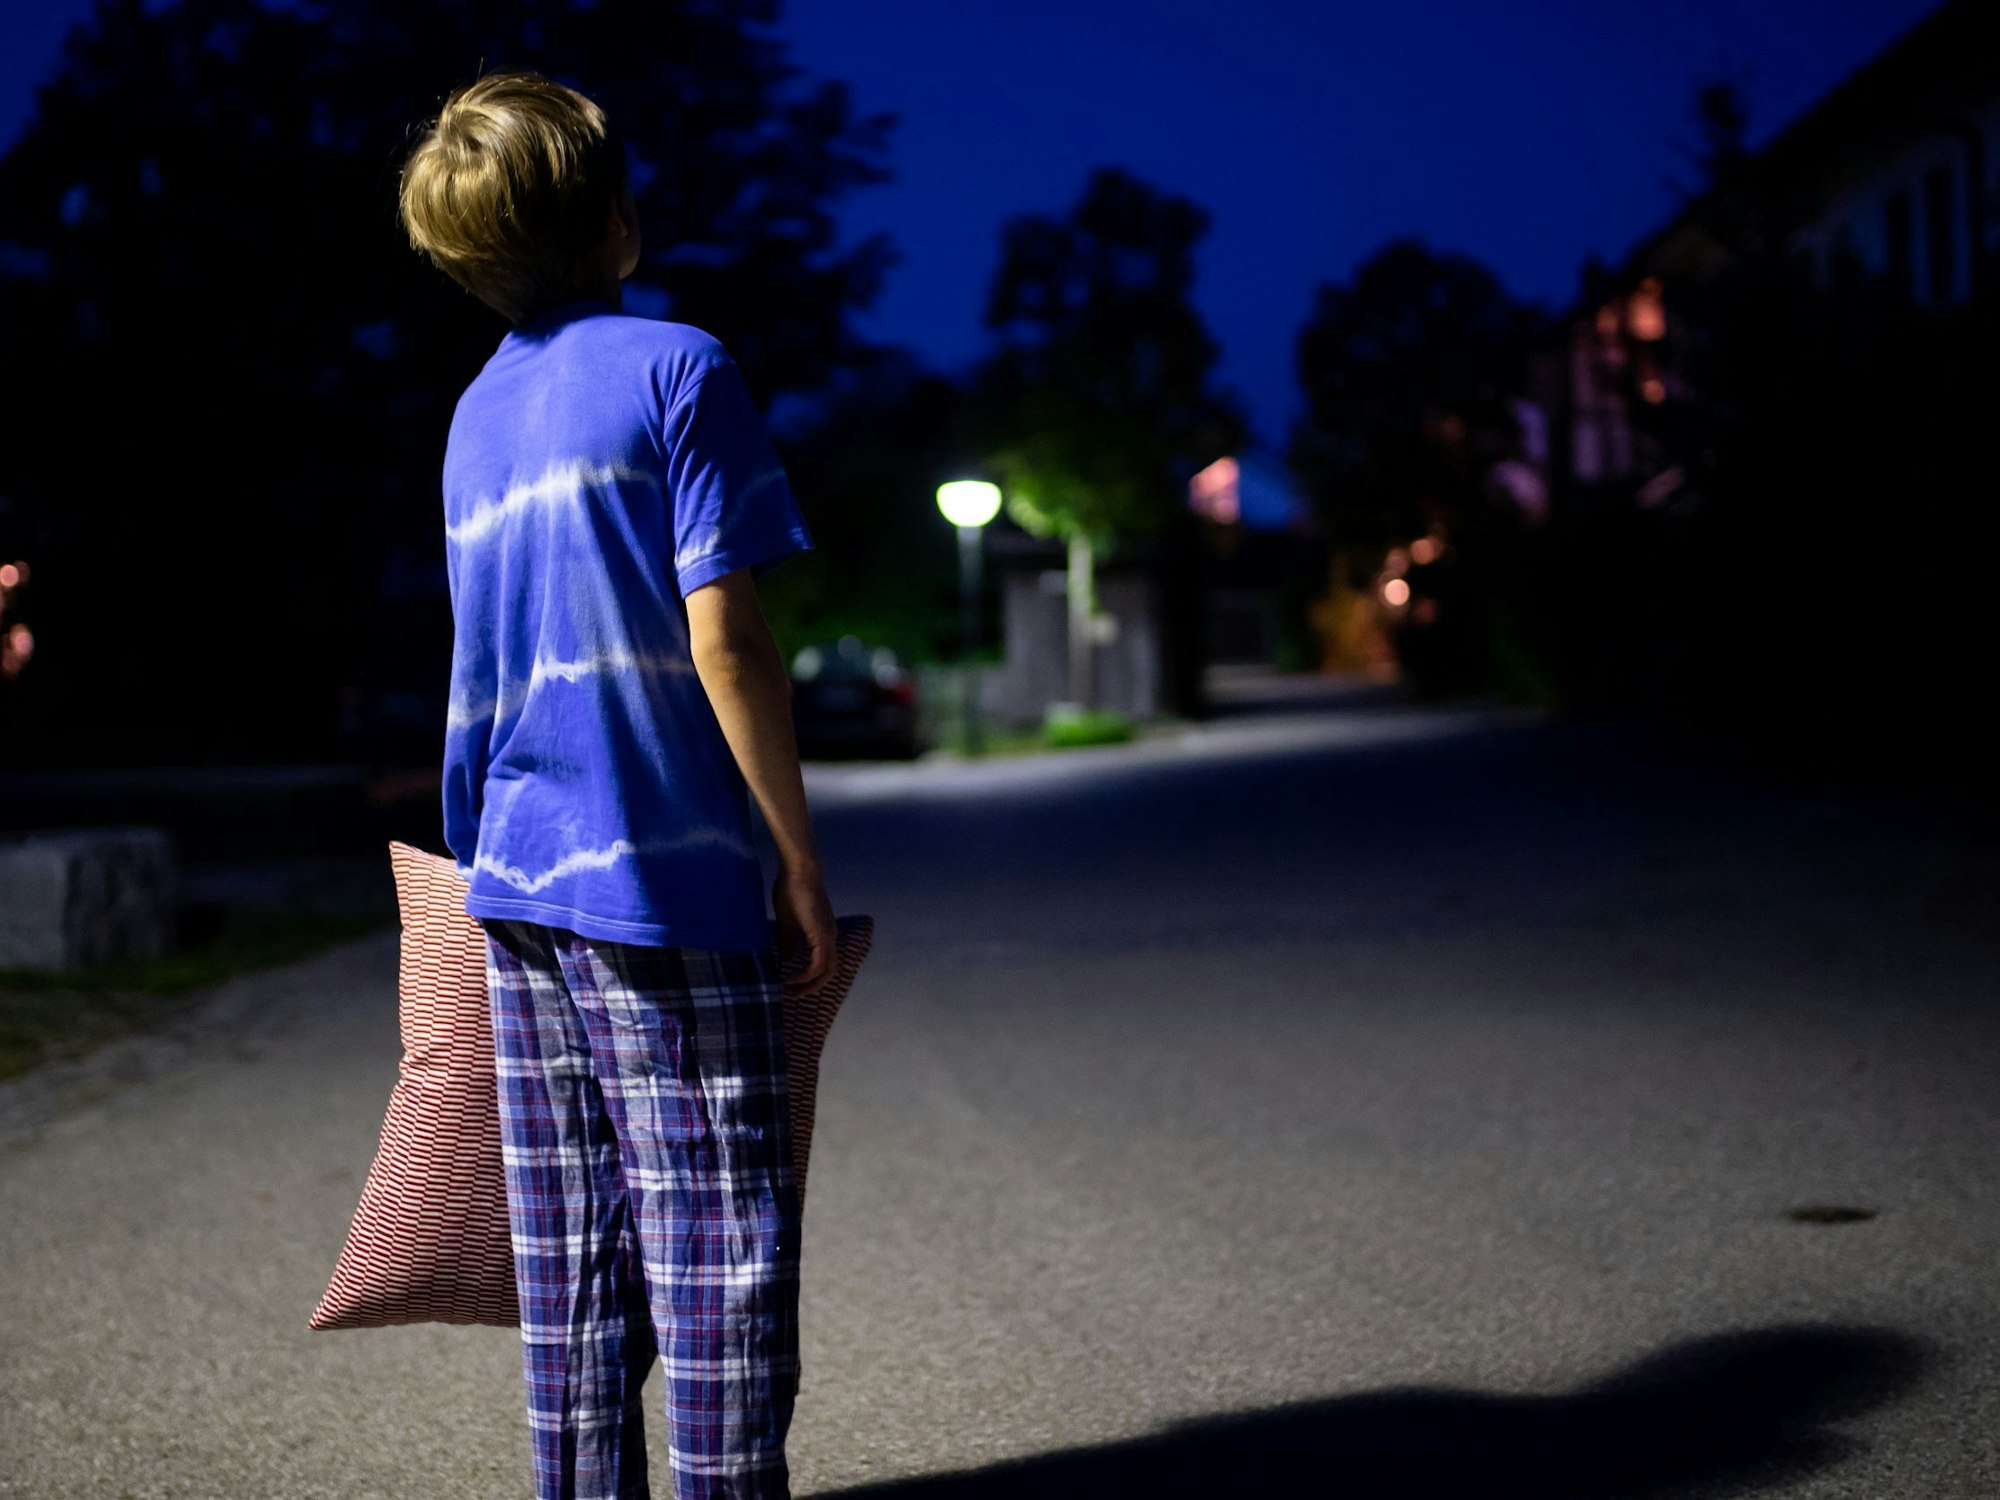 Ein Junge im Schlafanzug steht nachts mit einem Kissen in der Hand auf einer Straße.